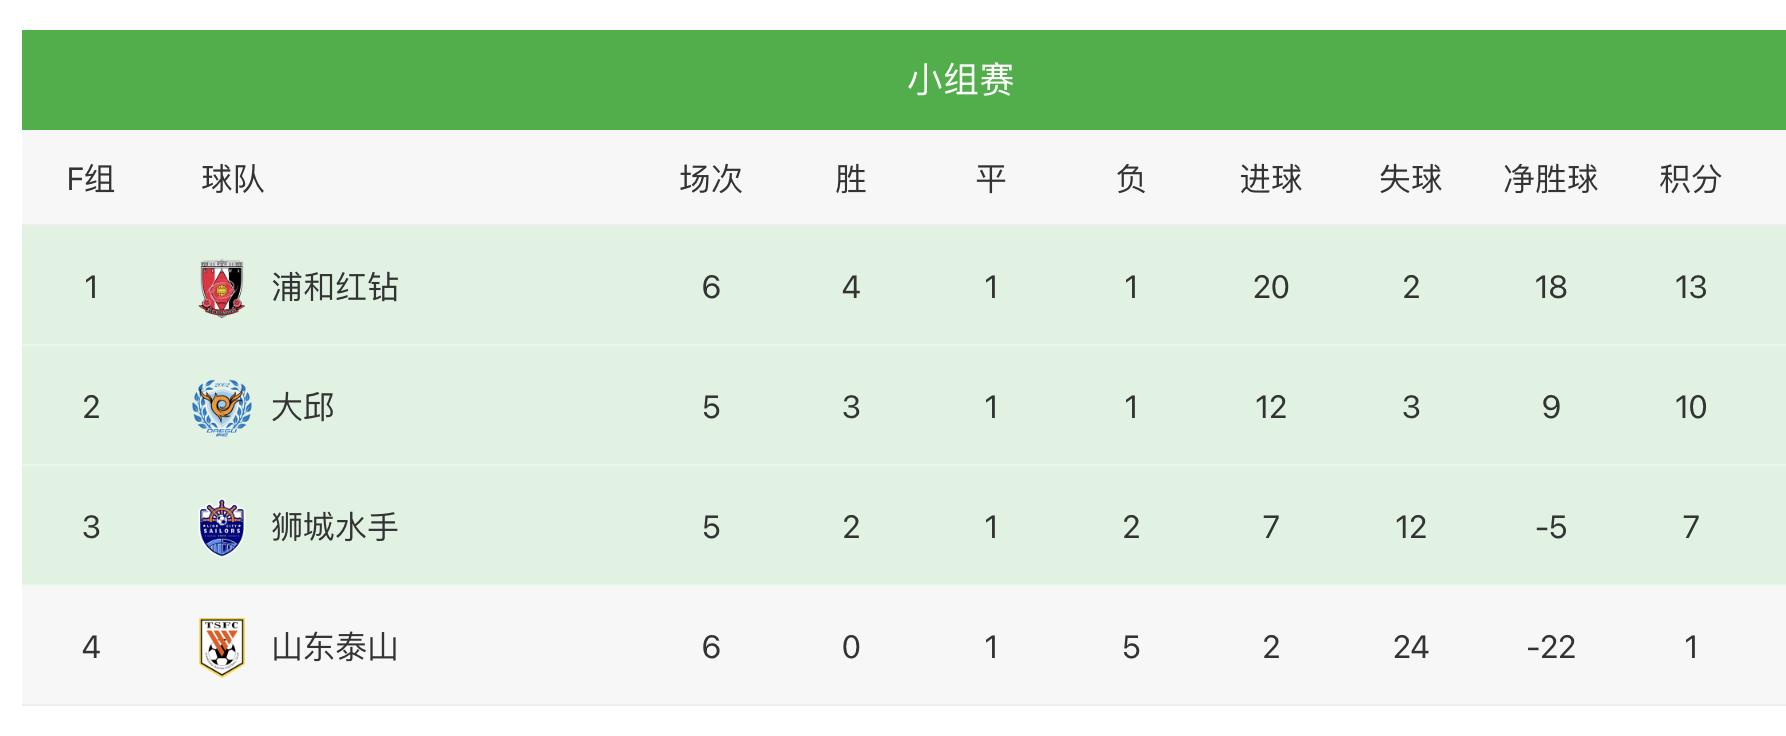 0-5，山东泰山又制造亚冠惨案，中国足球发展任重道远